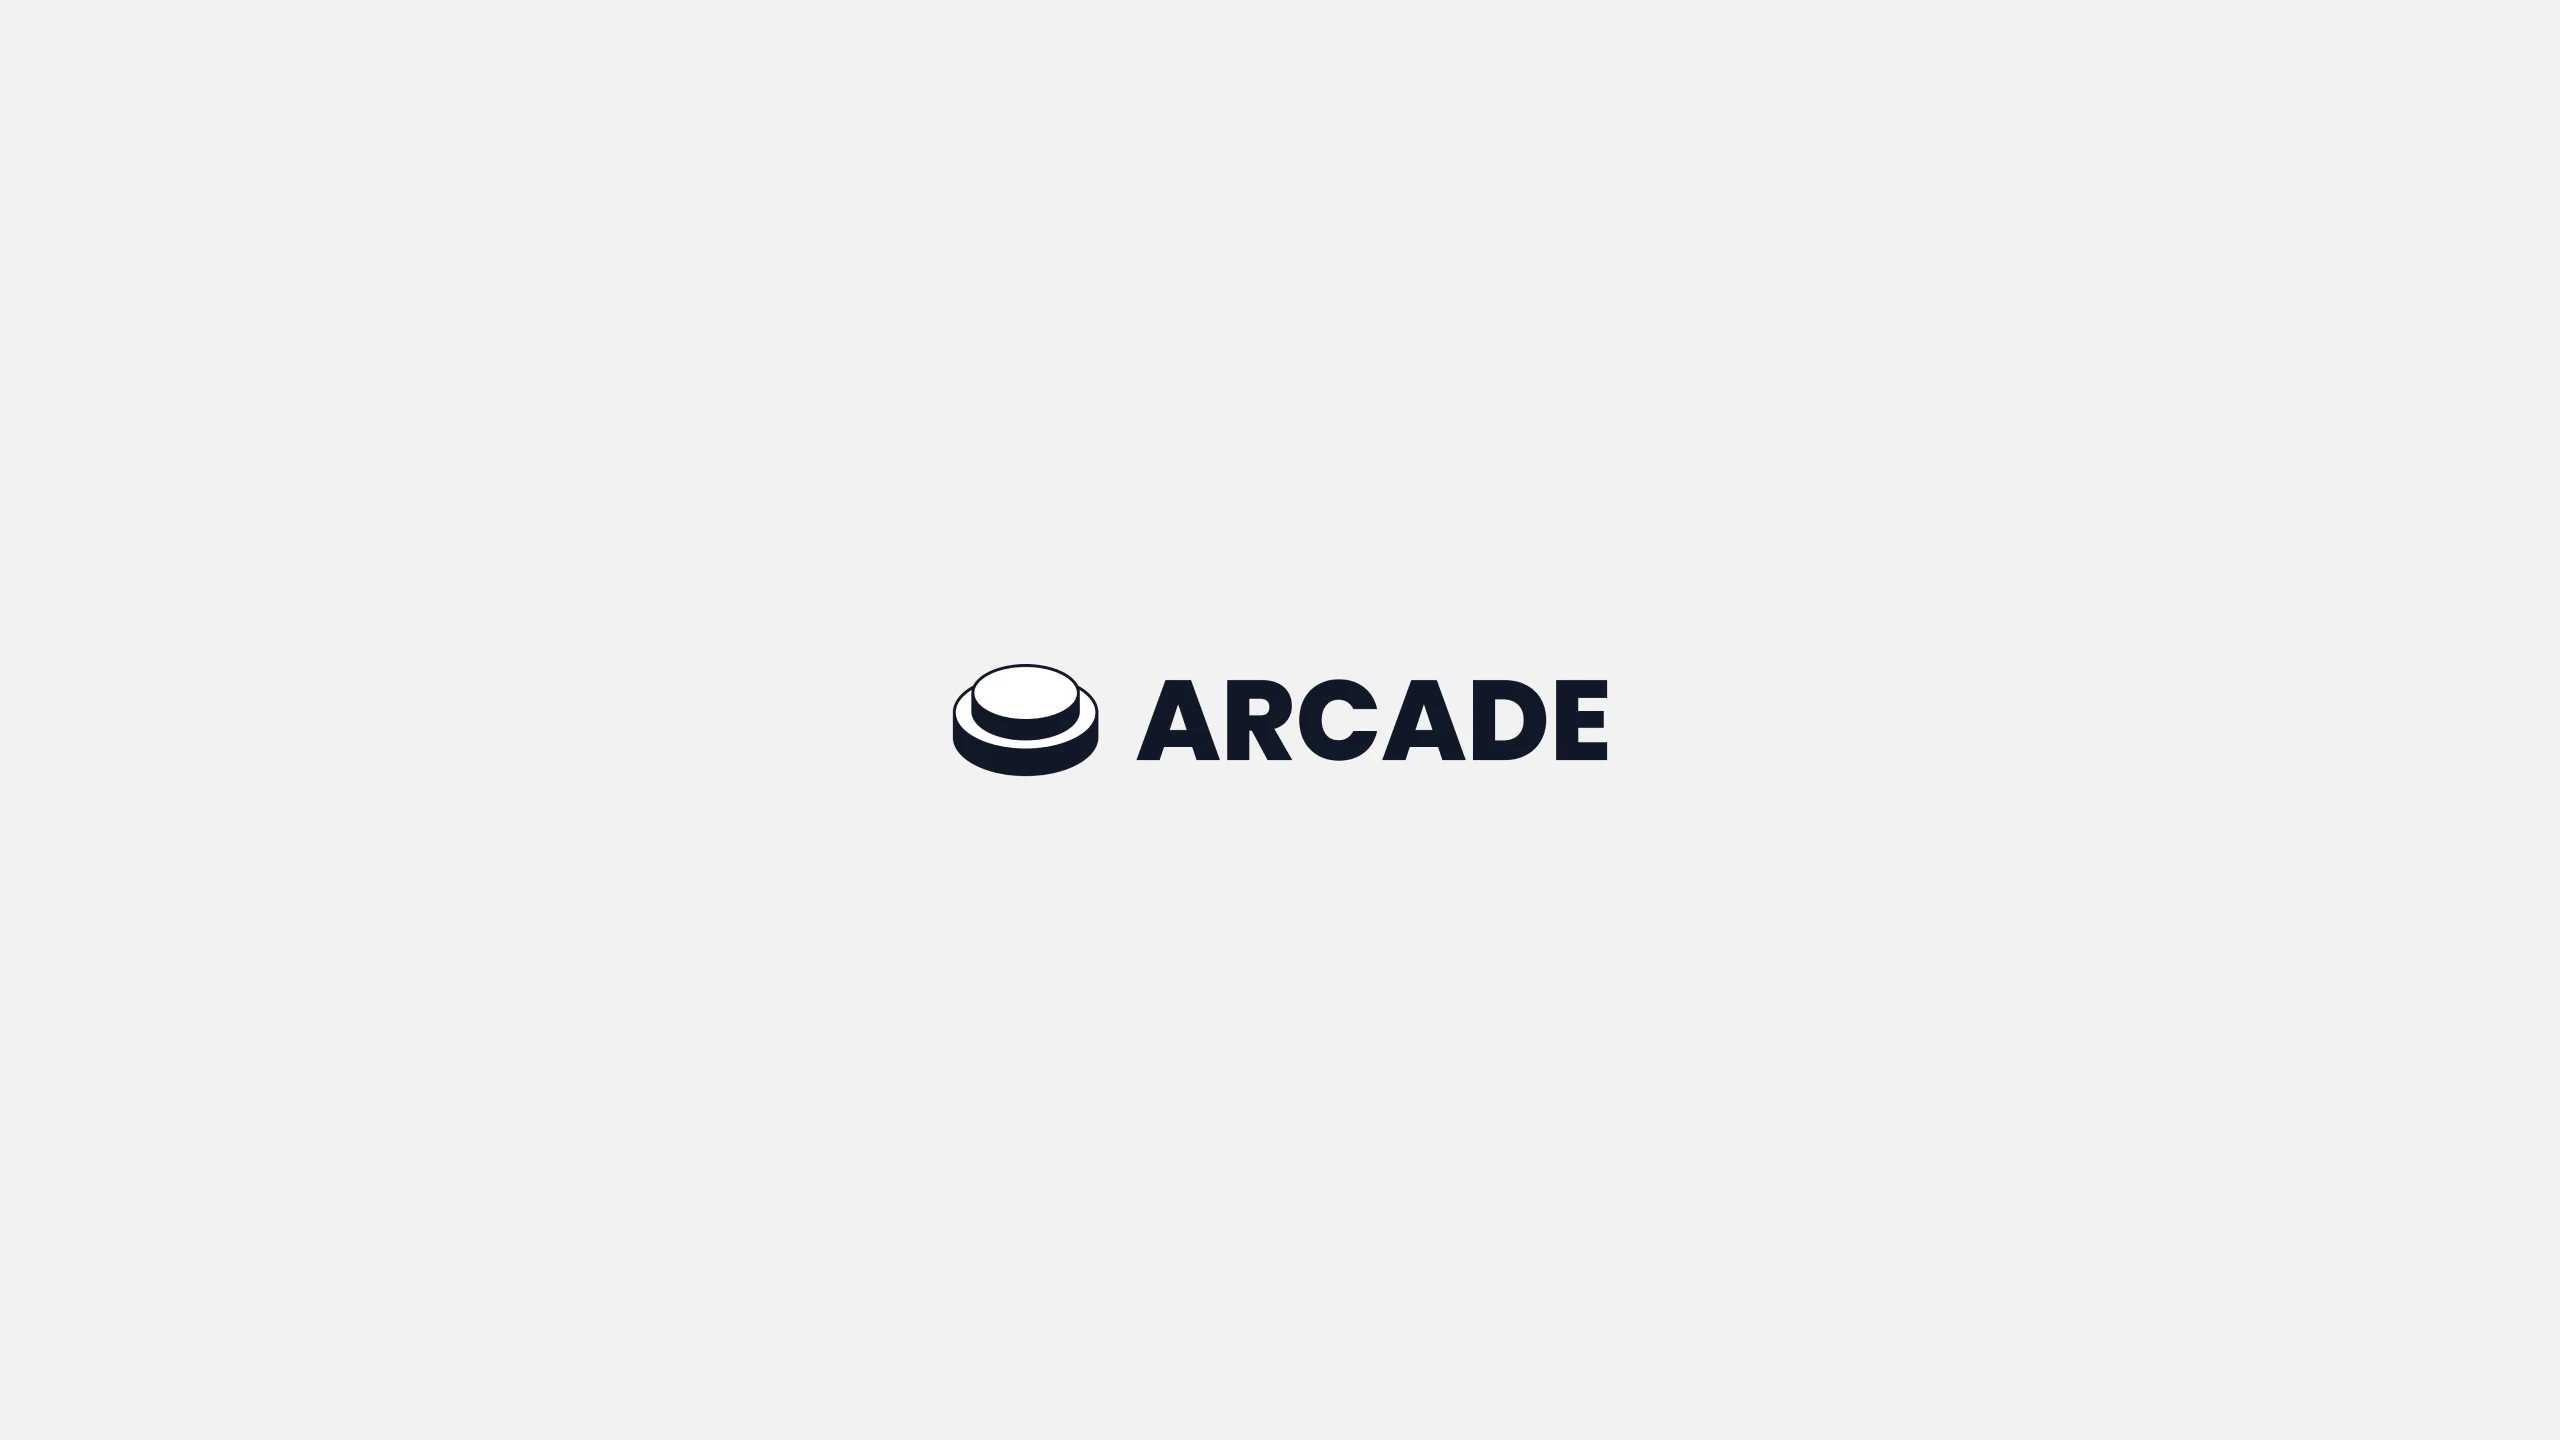 Arcade Blog Cover